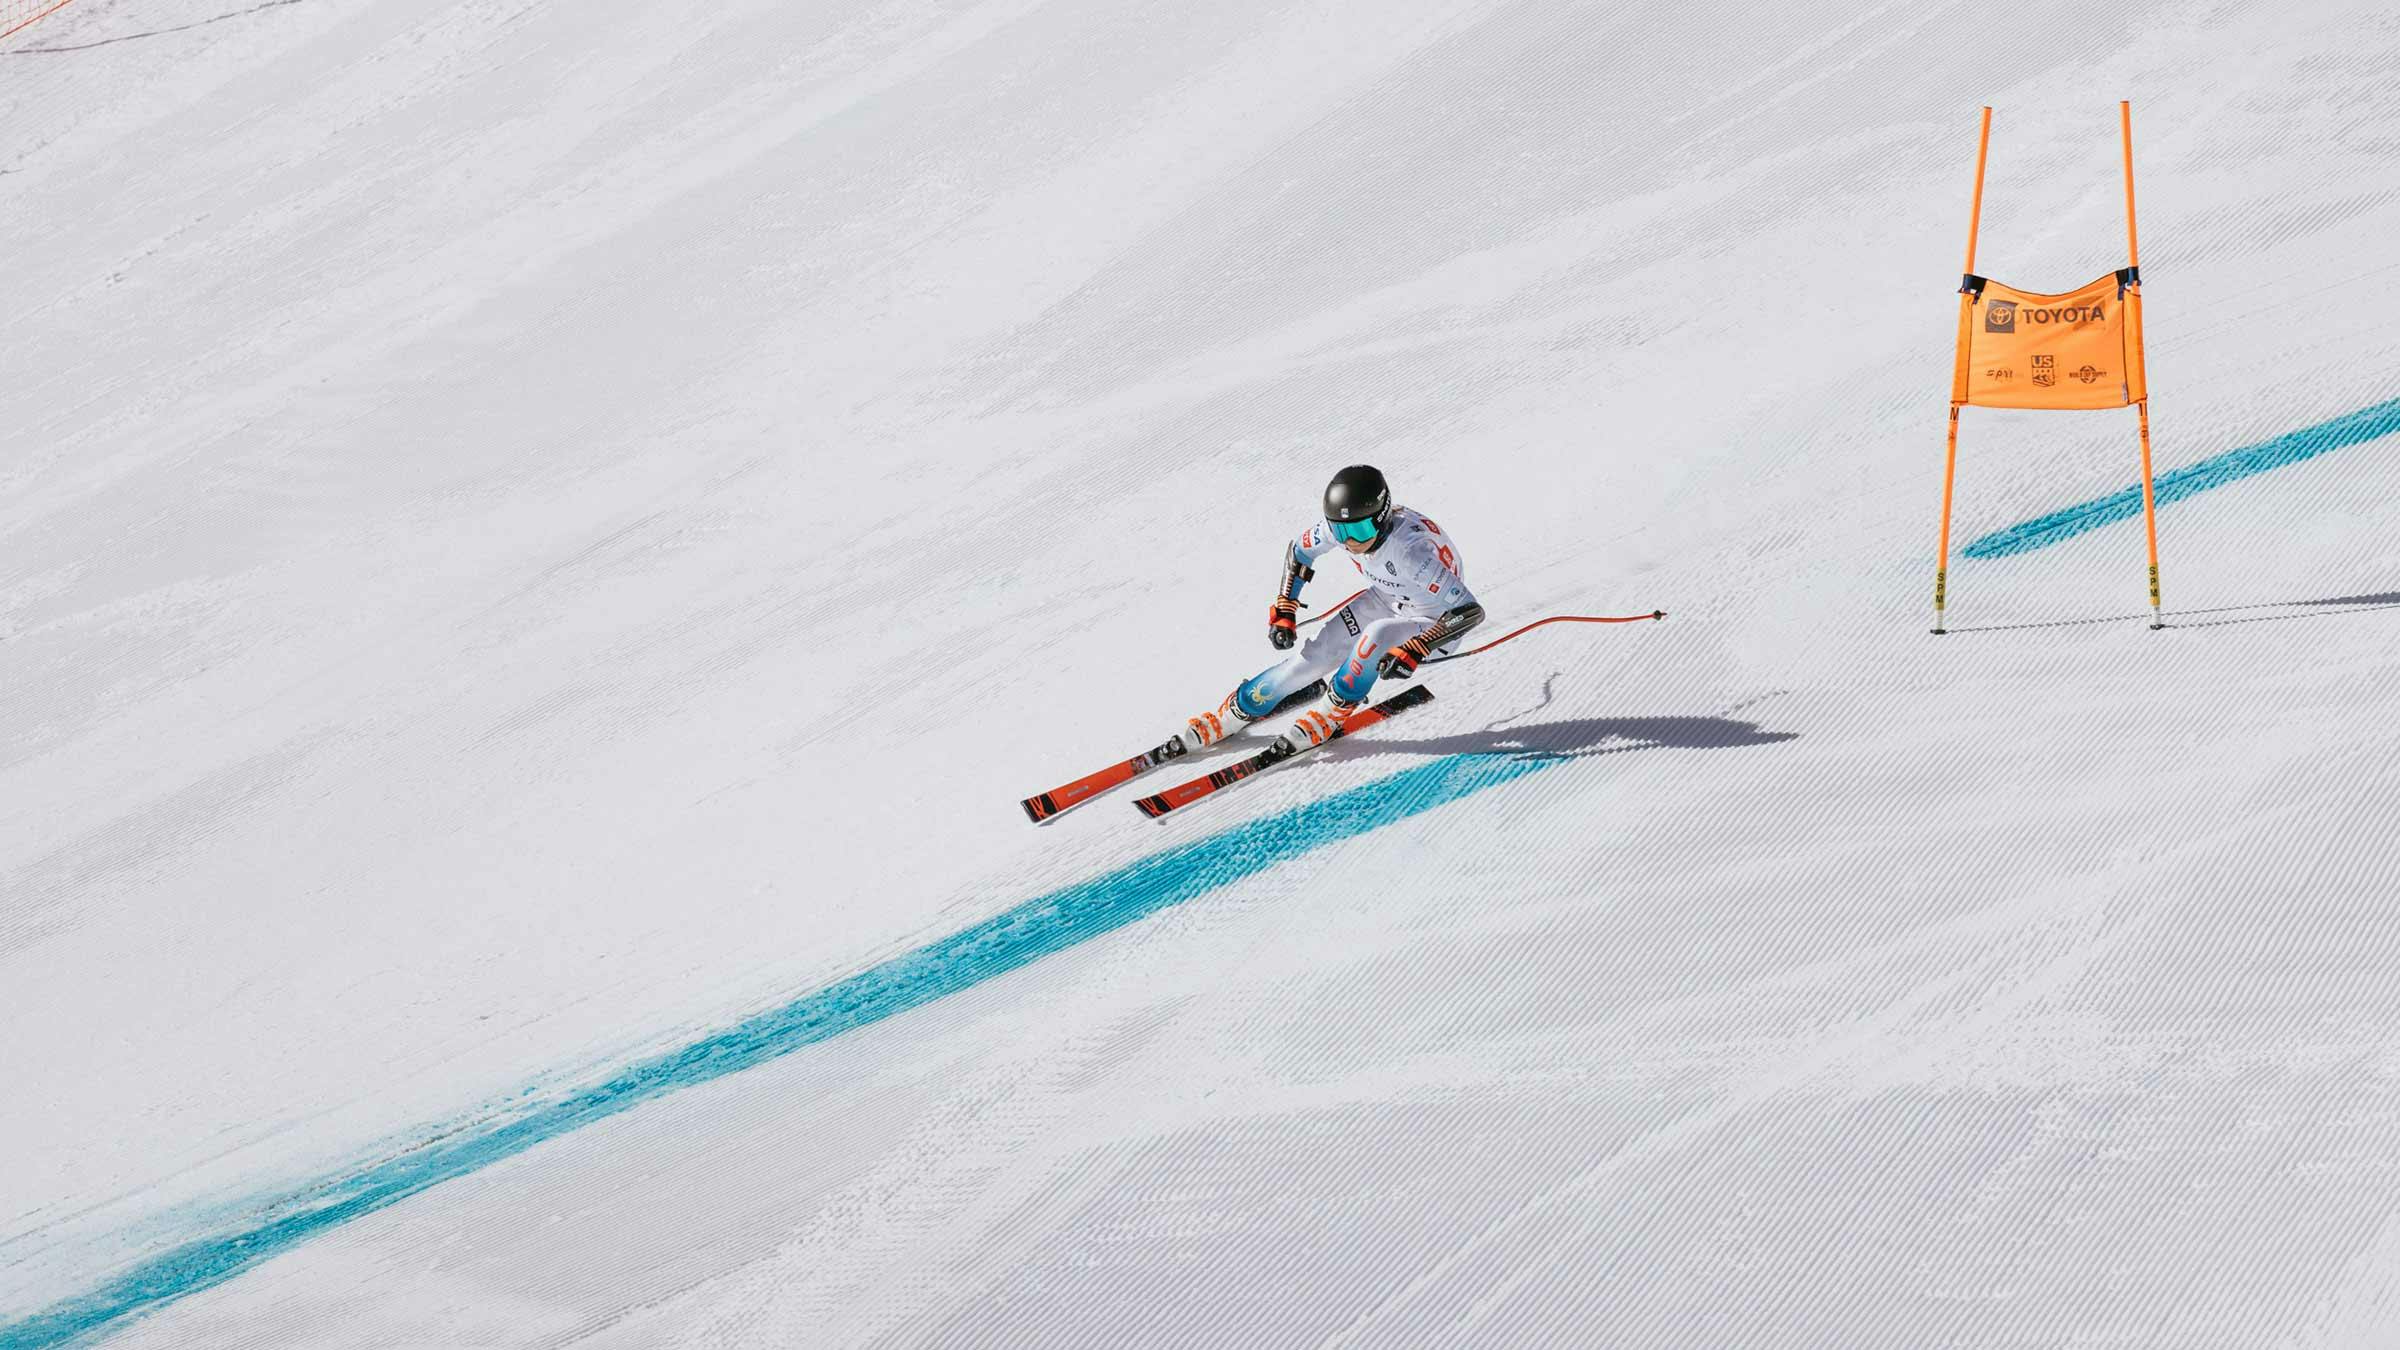 Alpine ski racer